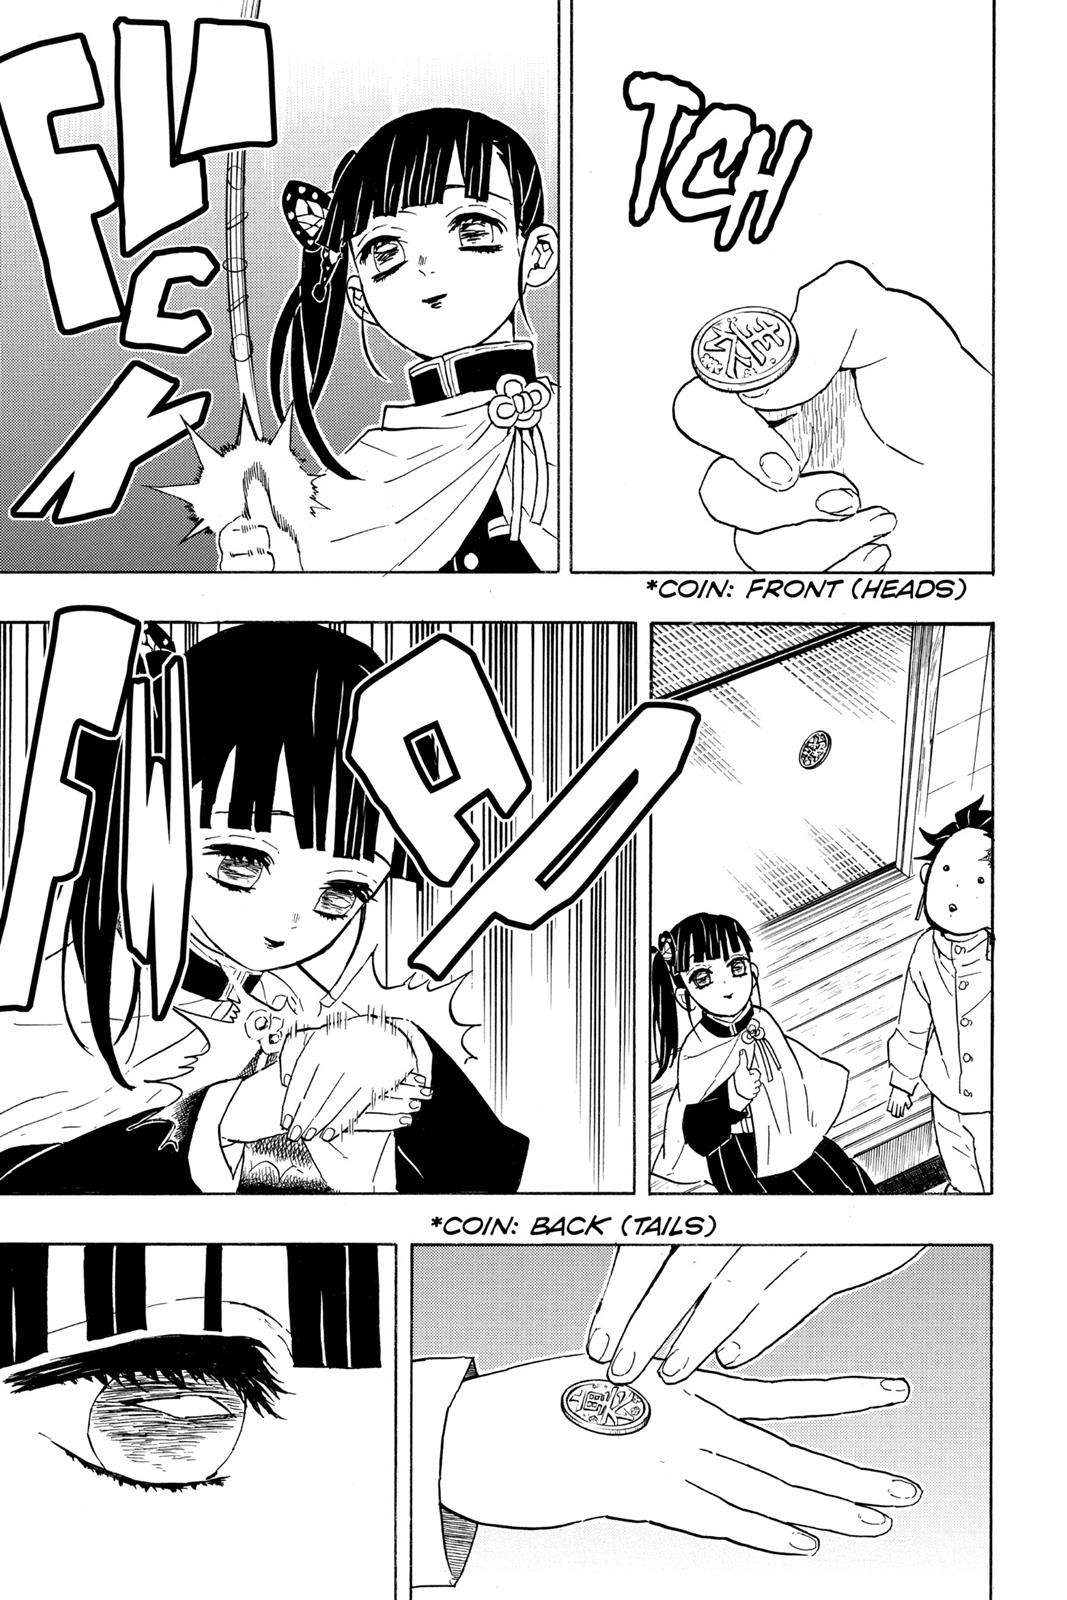 Demon Slayer Manga Manga Chapter - 53 - image 14